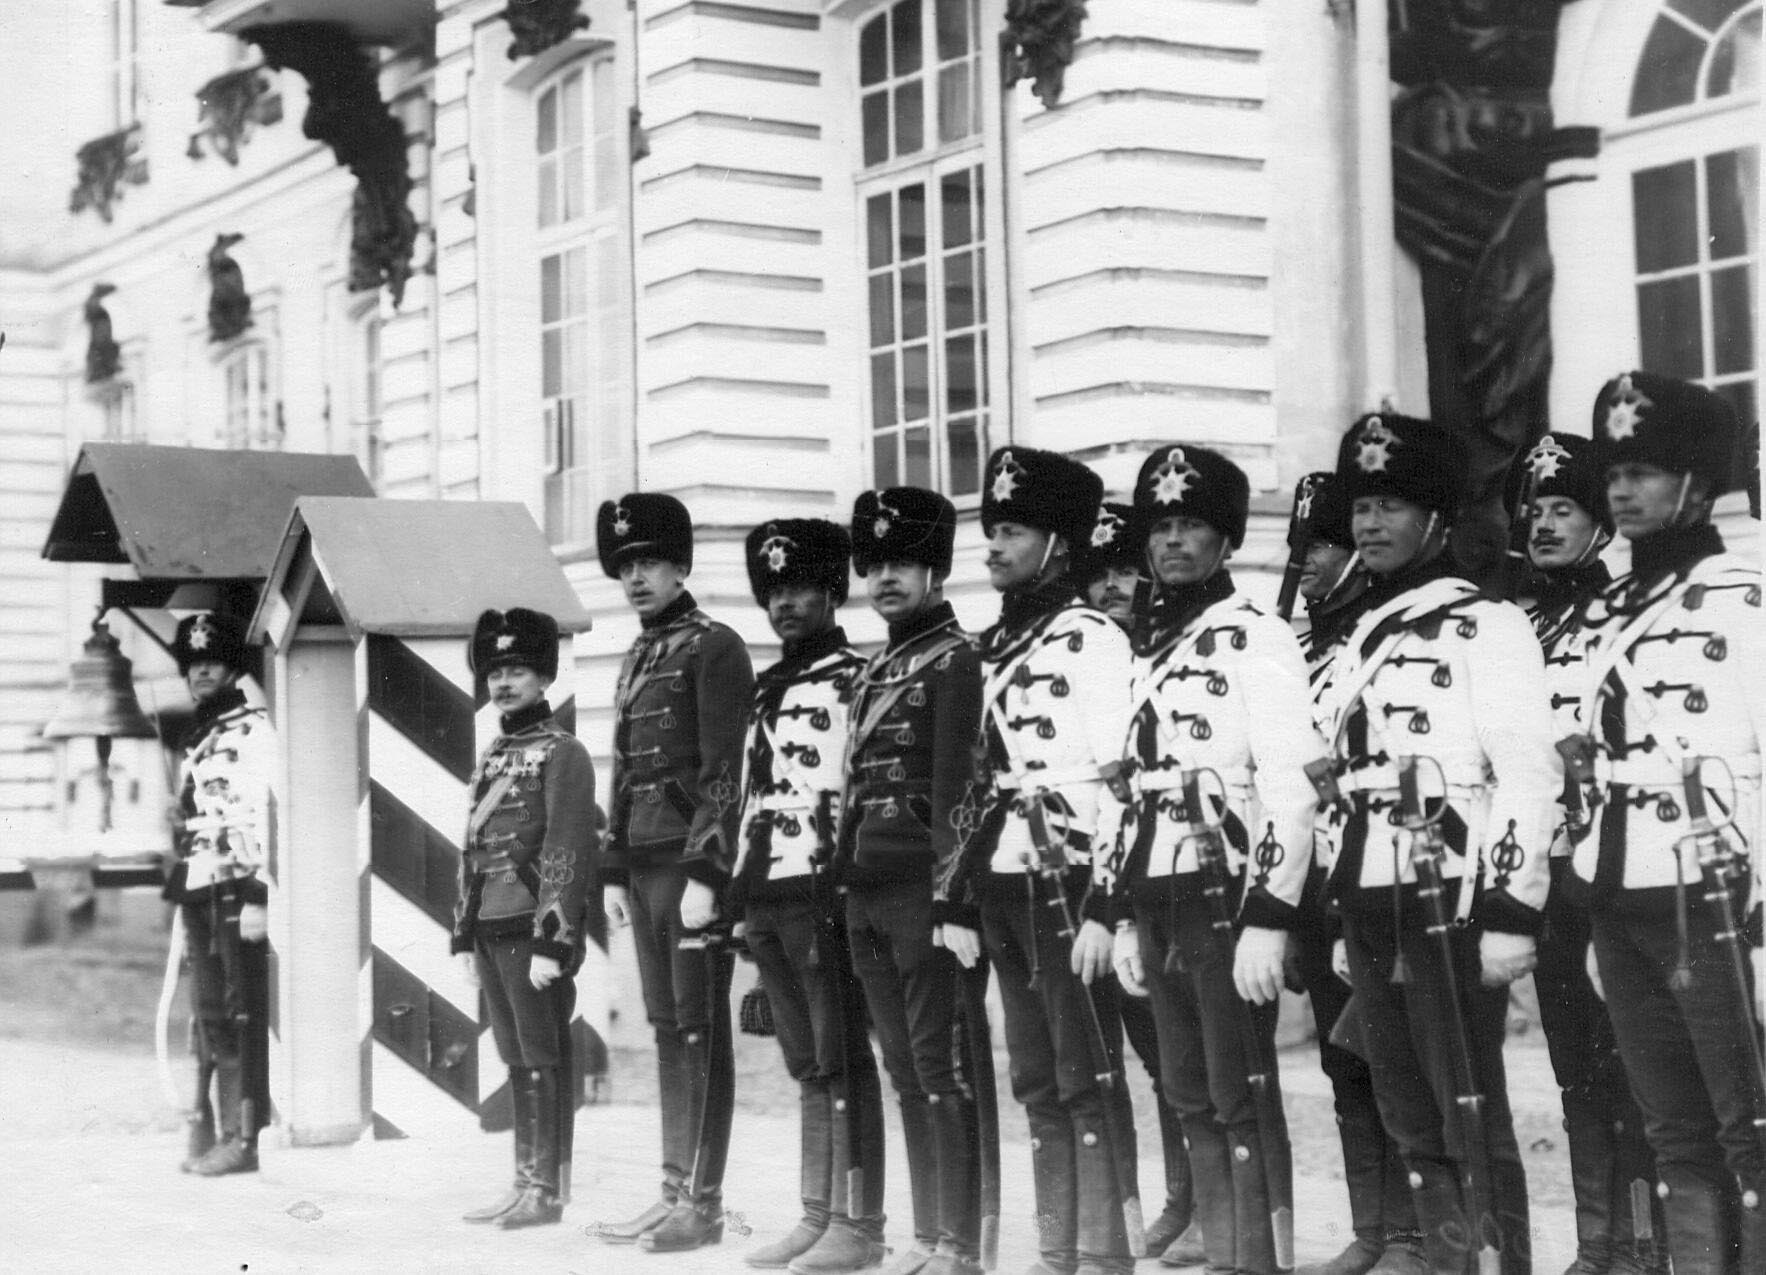 1913. Дворцовый караул полка у здания Екатерининского дворца. 22 апреля